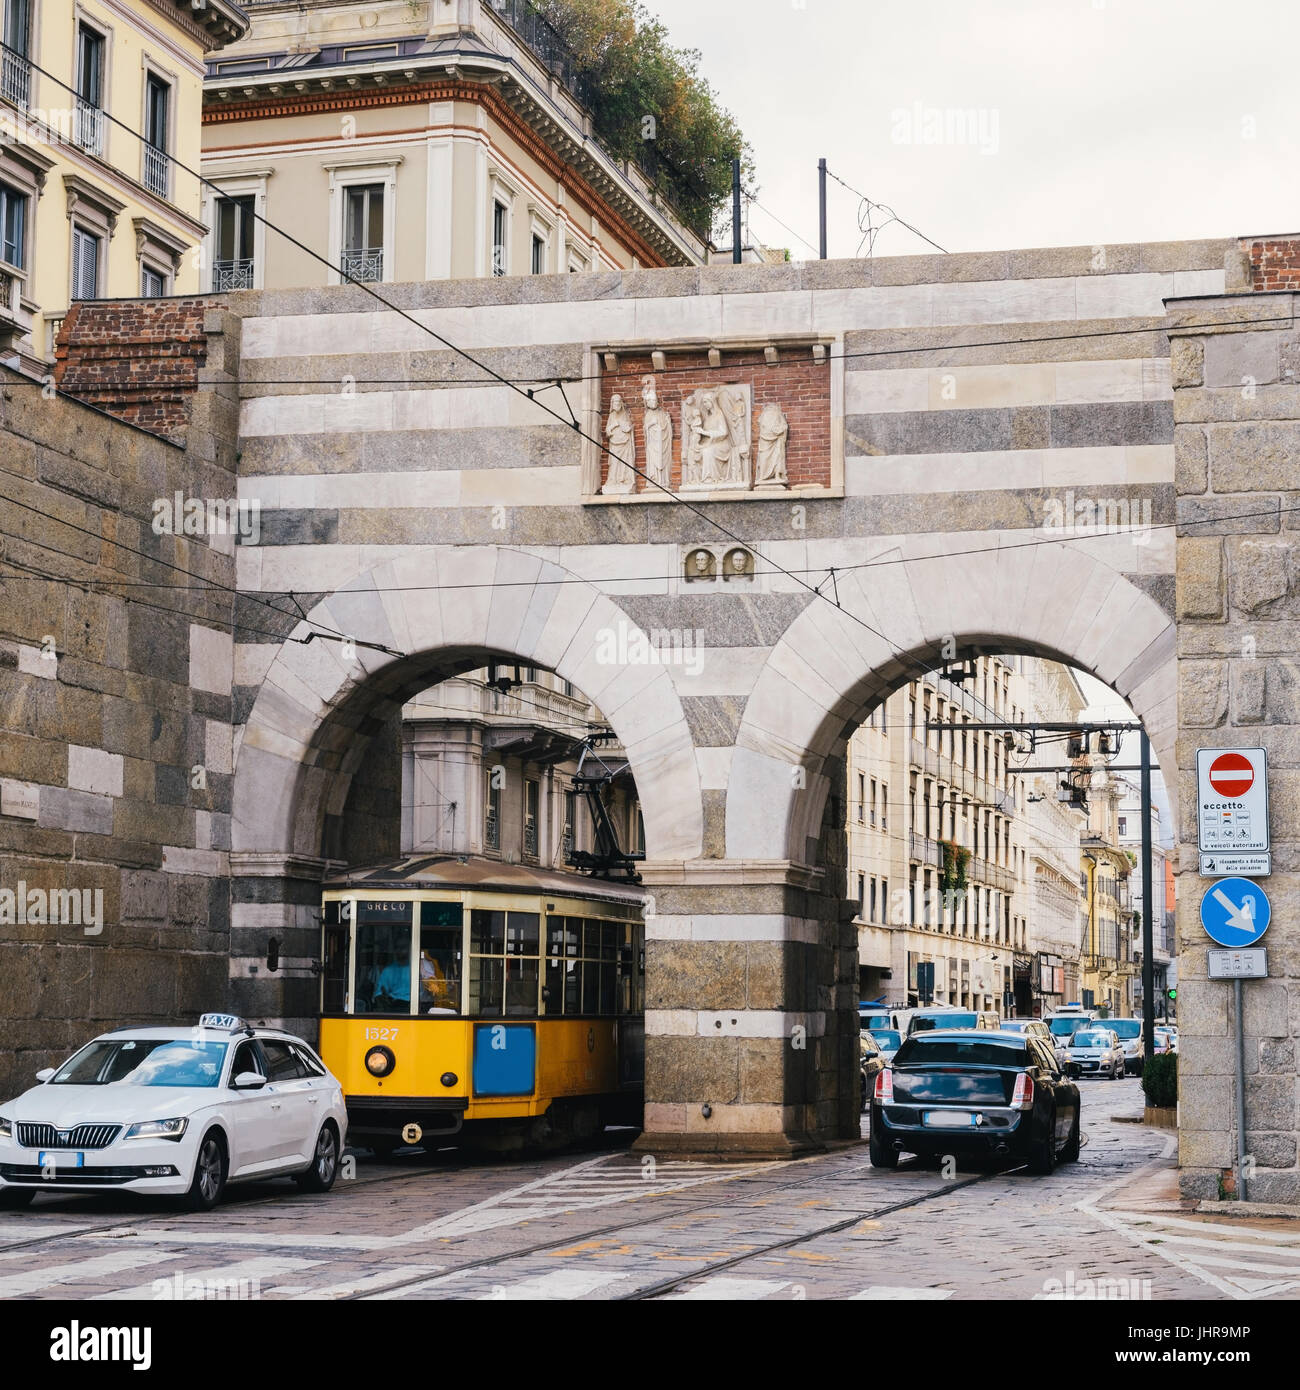 L'Italie, Lombardie, Milan, Via Alessandro Manzoni Rue, Archi di Porta Nuova, portes de l'enceinte médiévale autour de Milan Banque D'Images